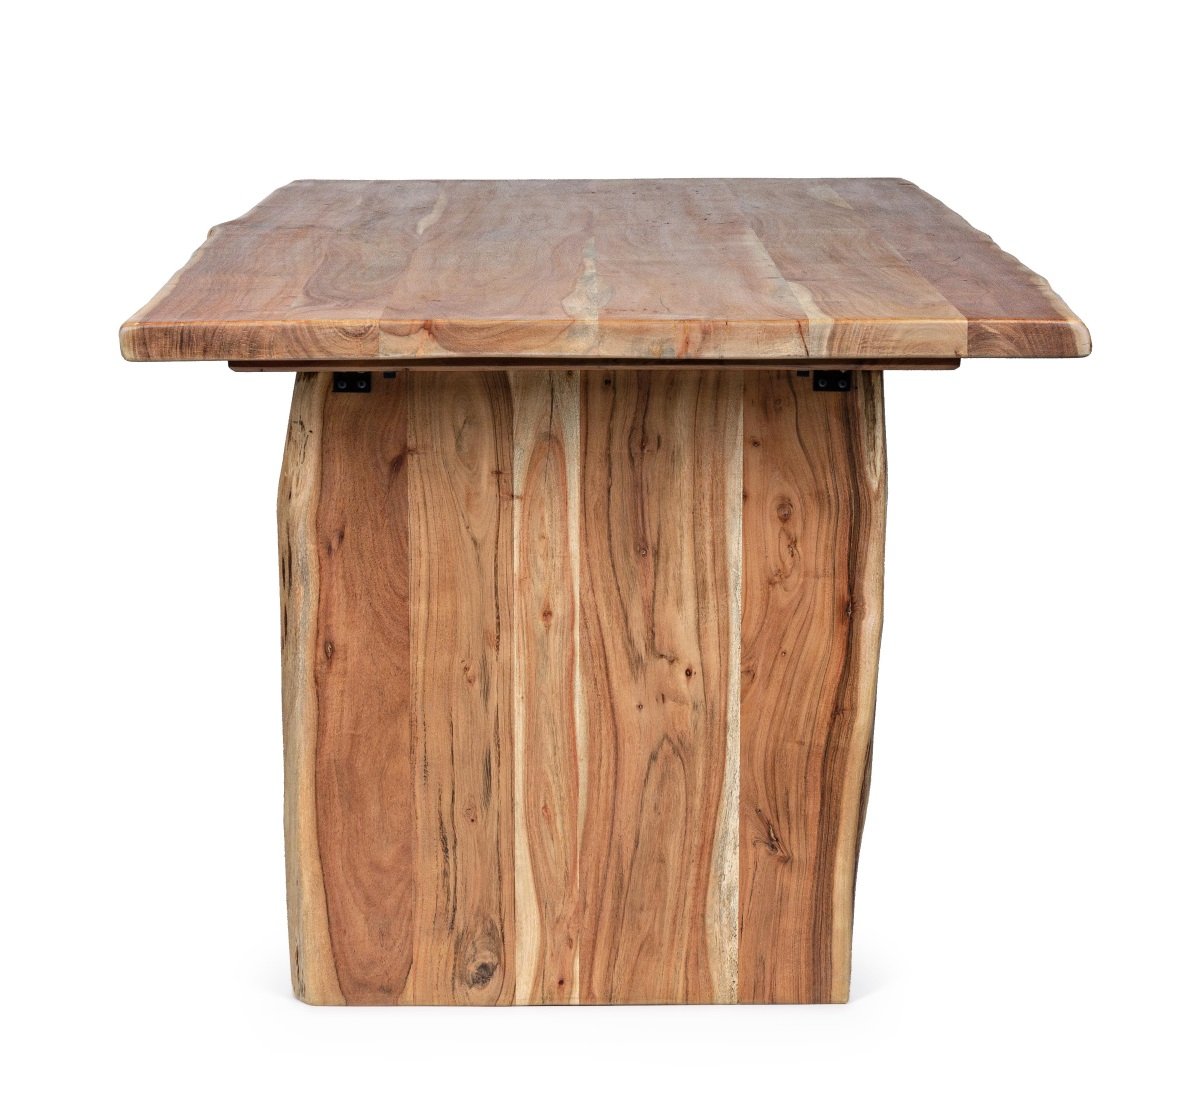 Table à manger bois massif scandinave effet tronc d'arbre TRADBORJ